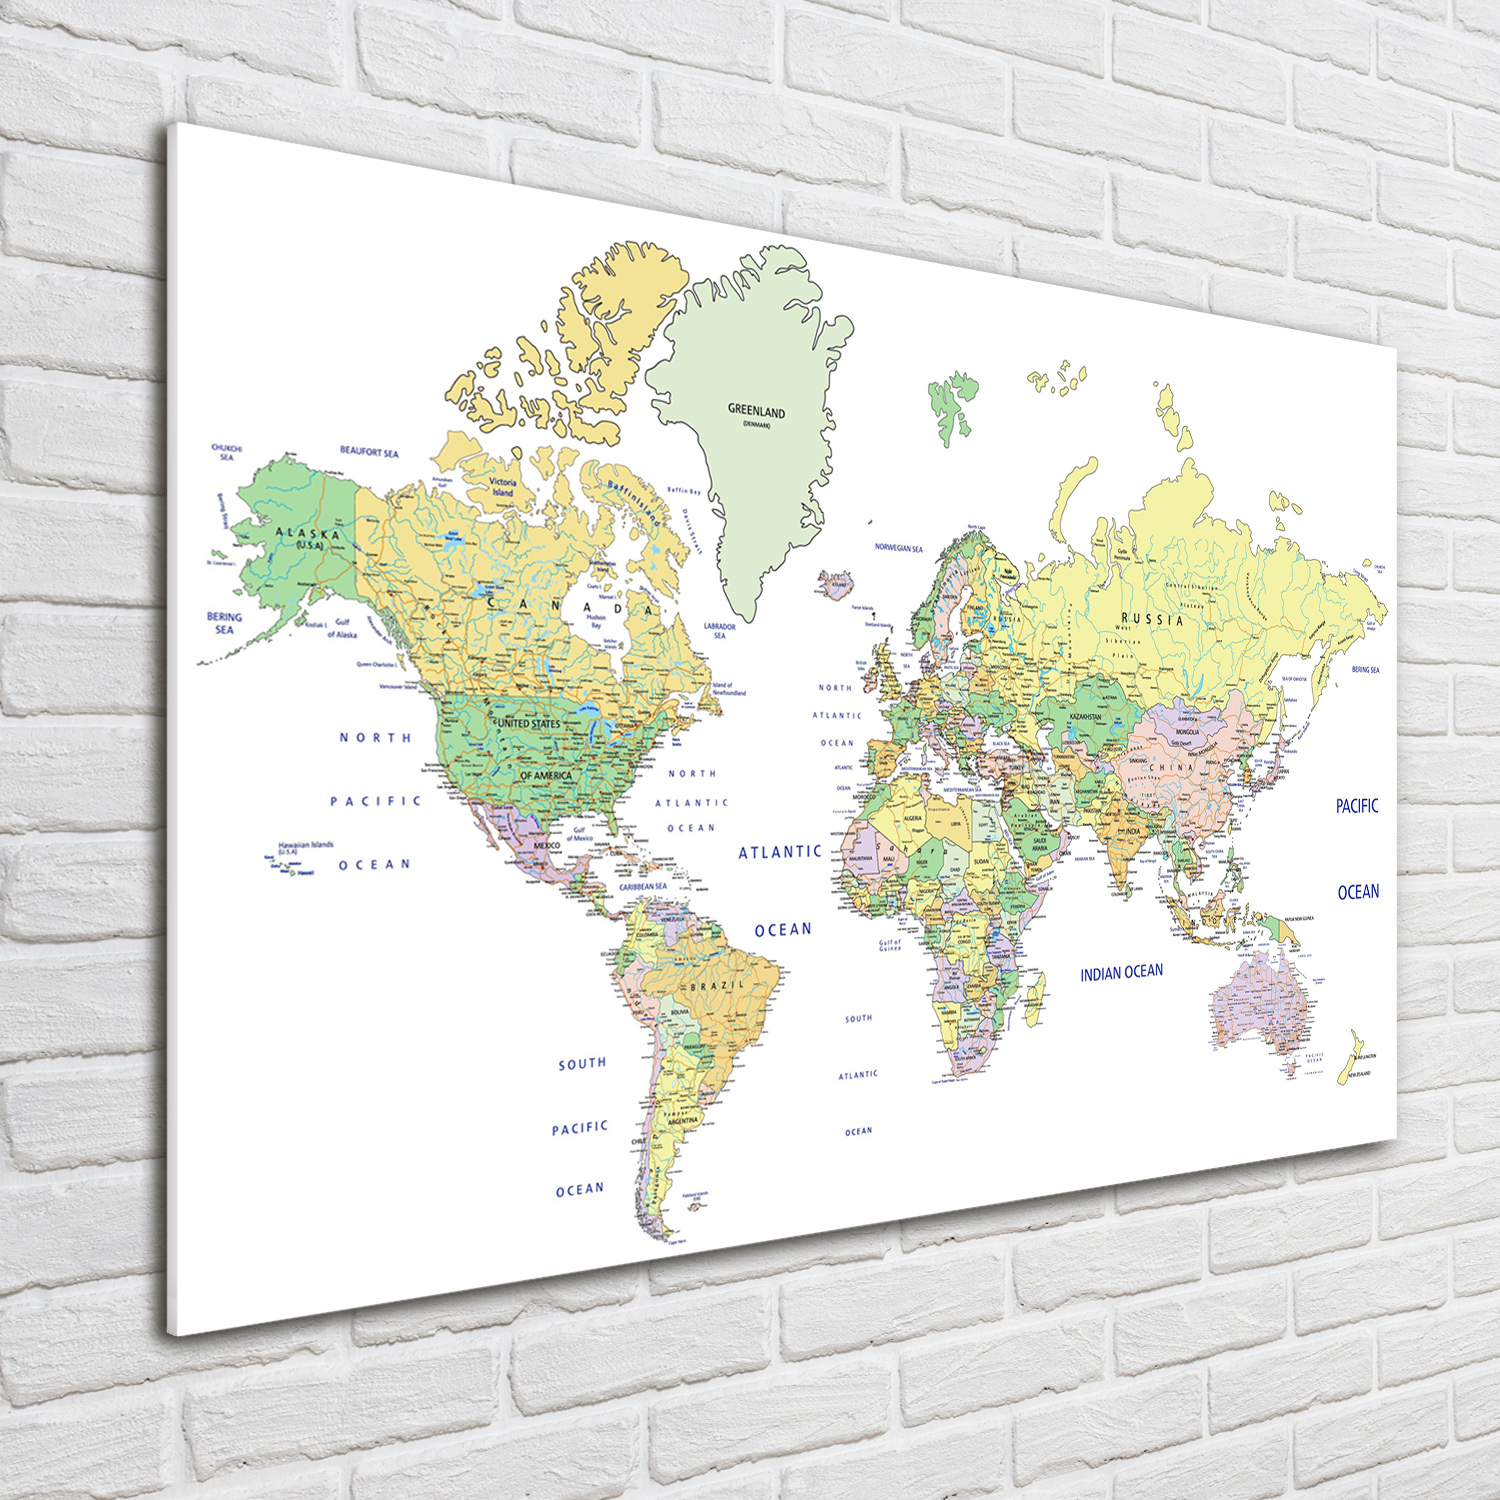 Glas-Bild Wandbilder Druck auf Glas 100x70 Deko Landkarten & Flaggen Weltkarte